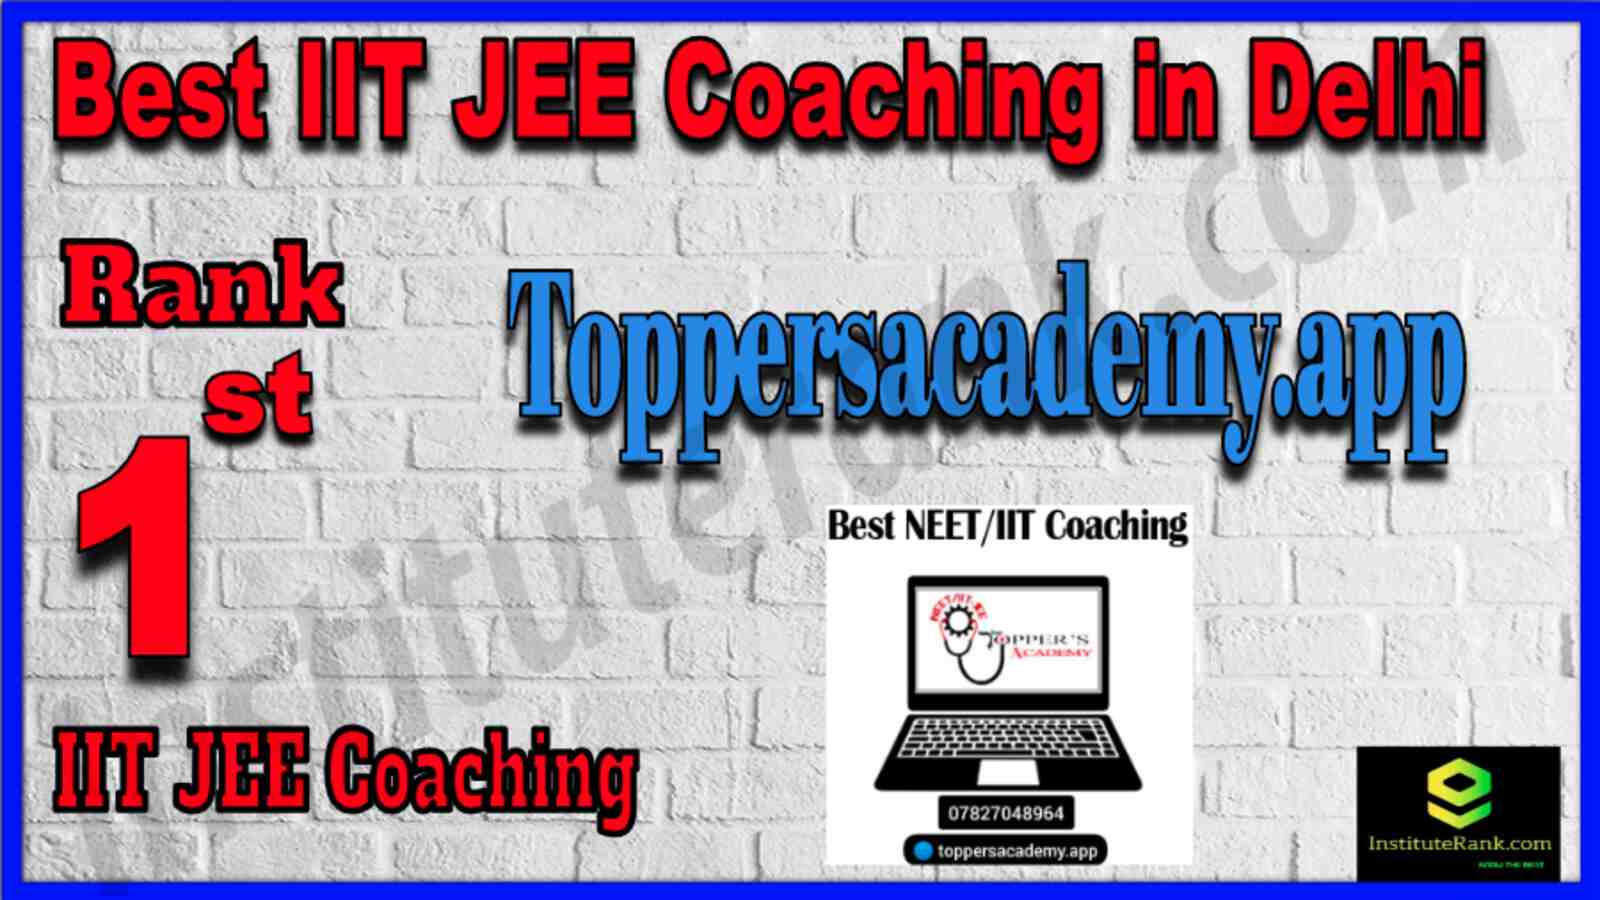 1st Best IIT JEE Coaching in Delhi Toppersacademy.app